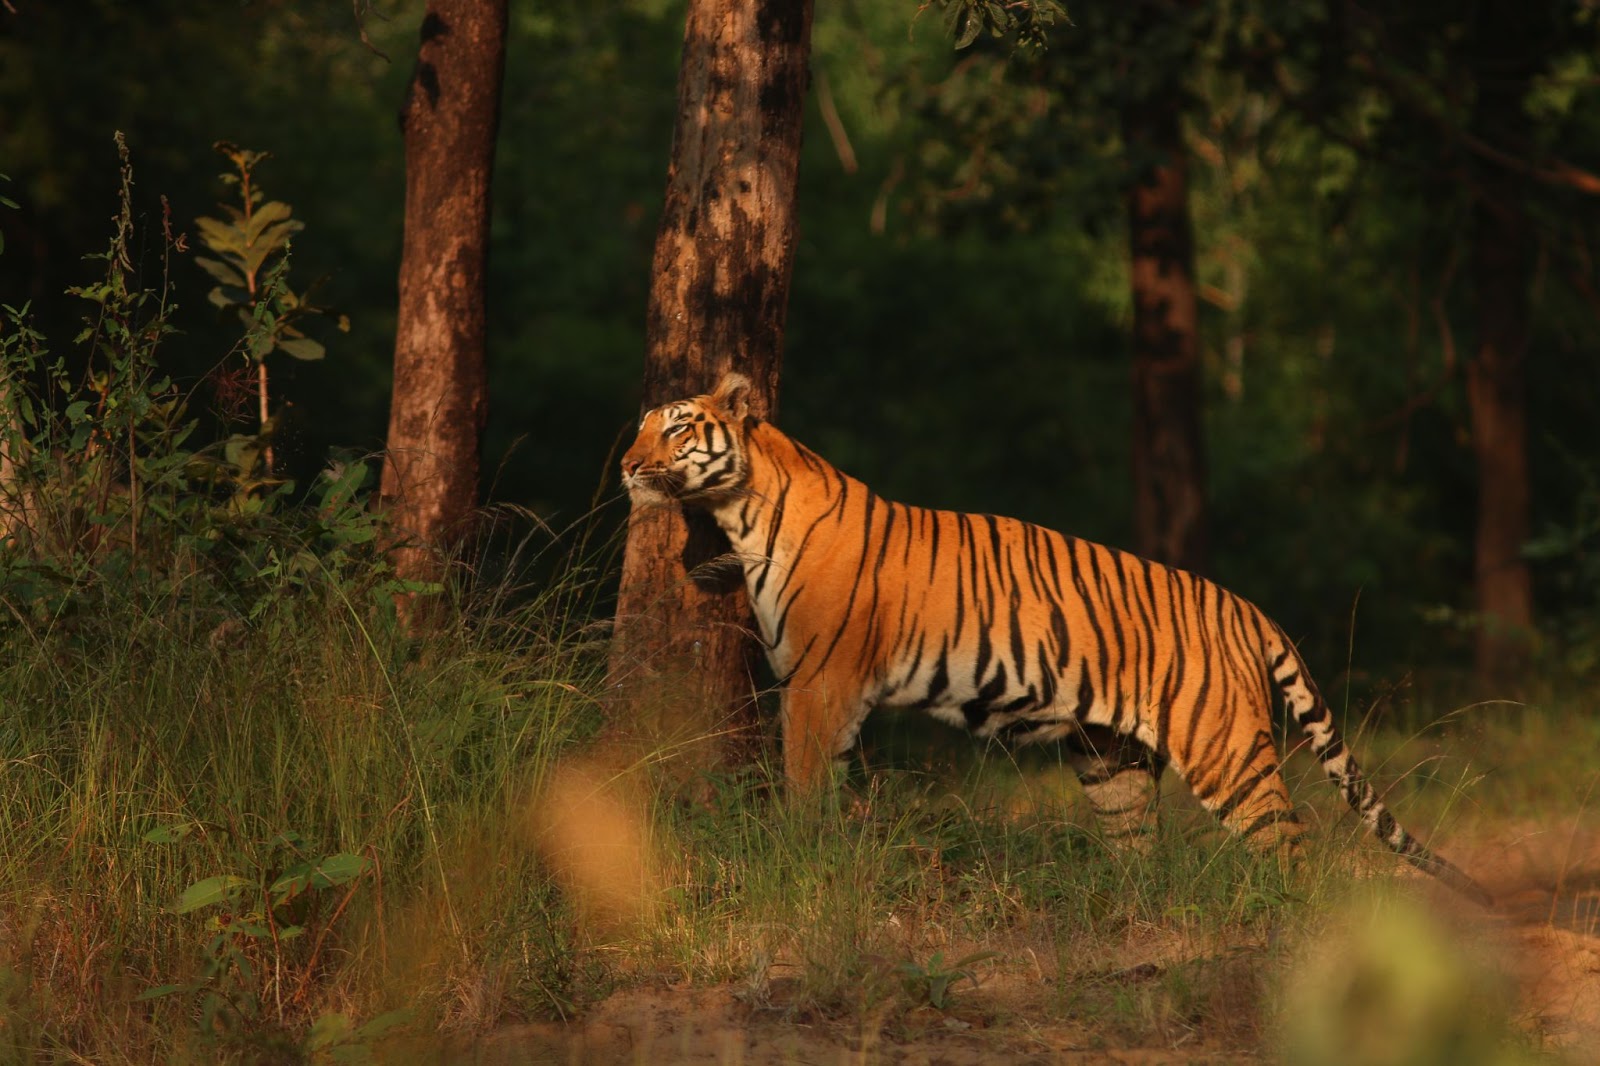 Tigress spotted in the Satpura Jungle